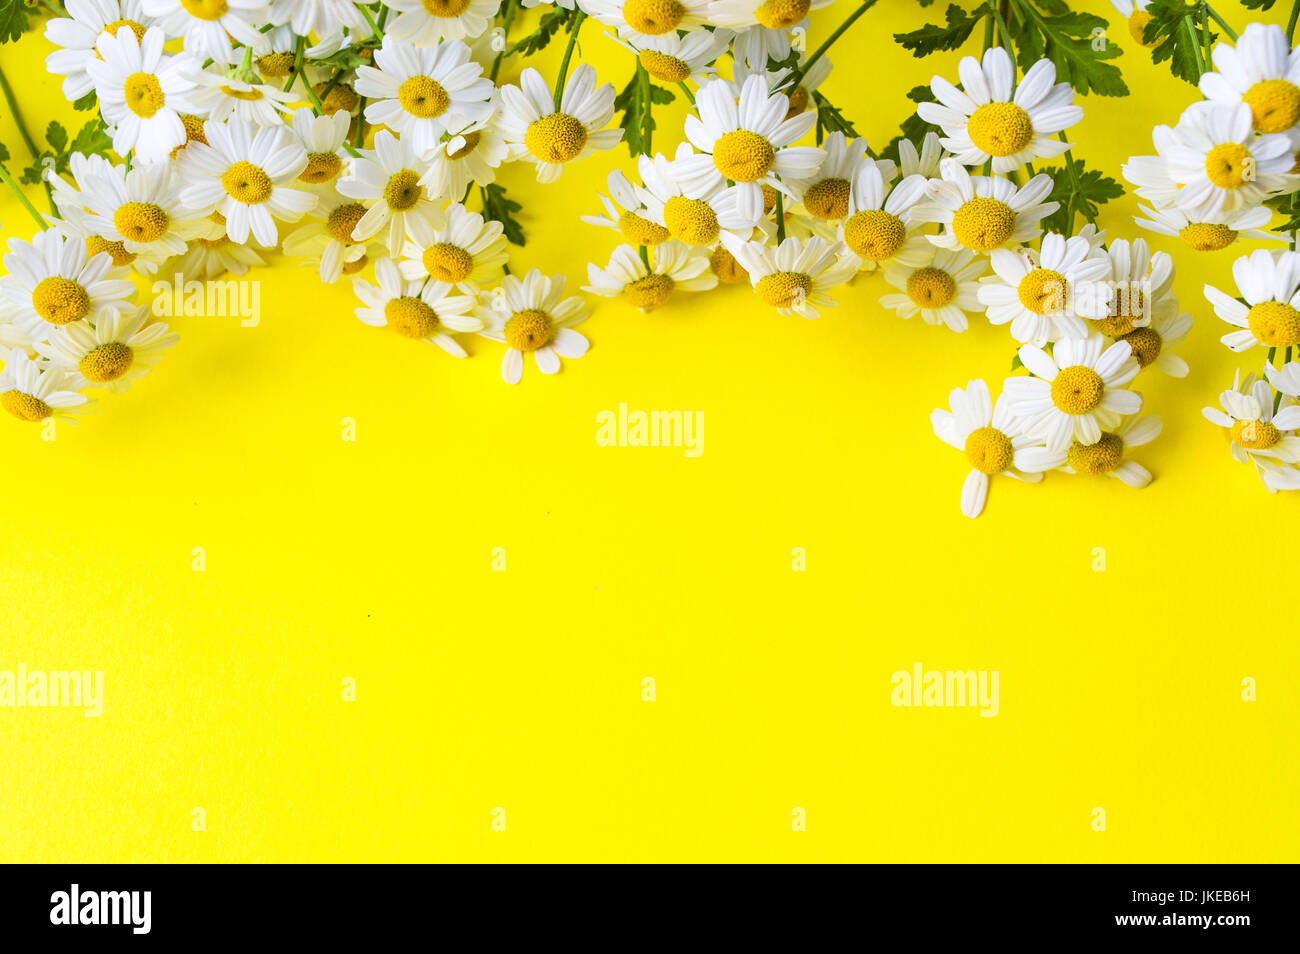 Kamillenblüten auf gelbem Hintergrund mit Textfreiraum Stockfoto